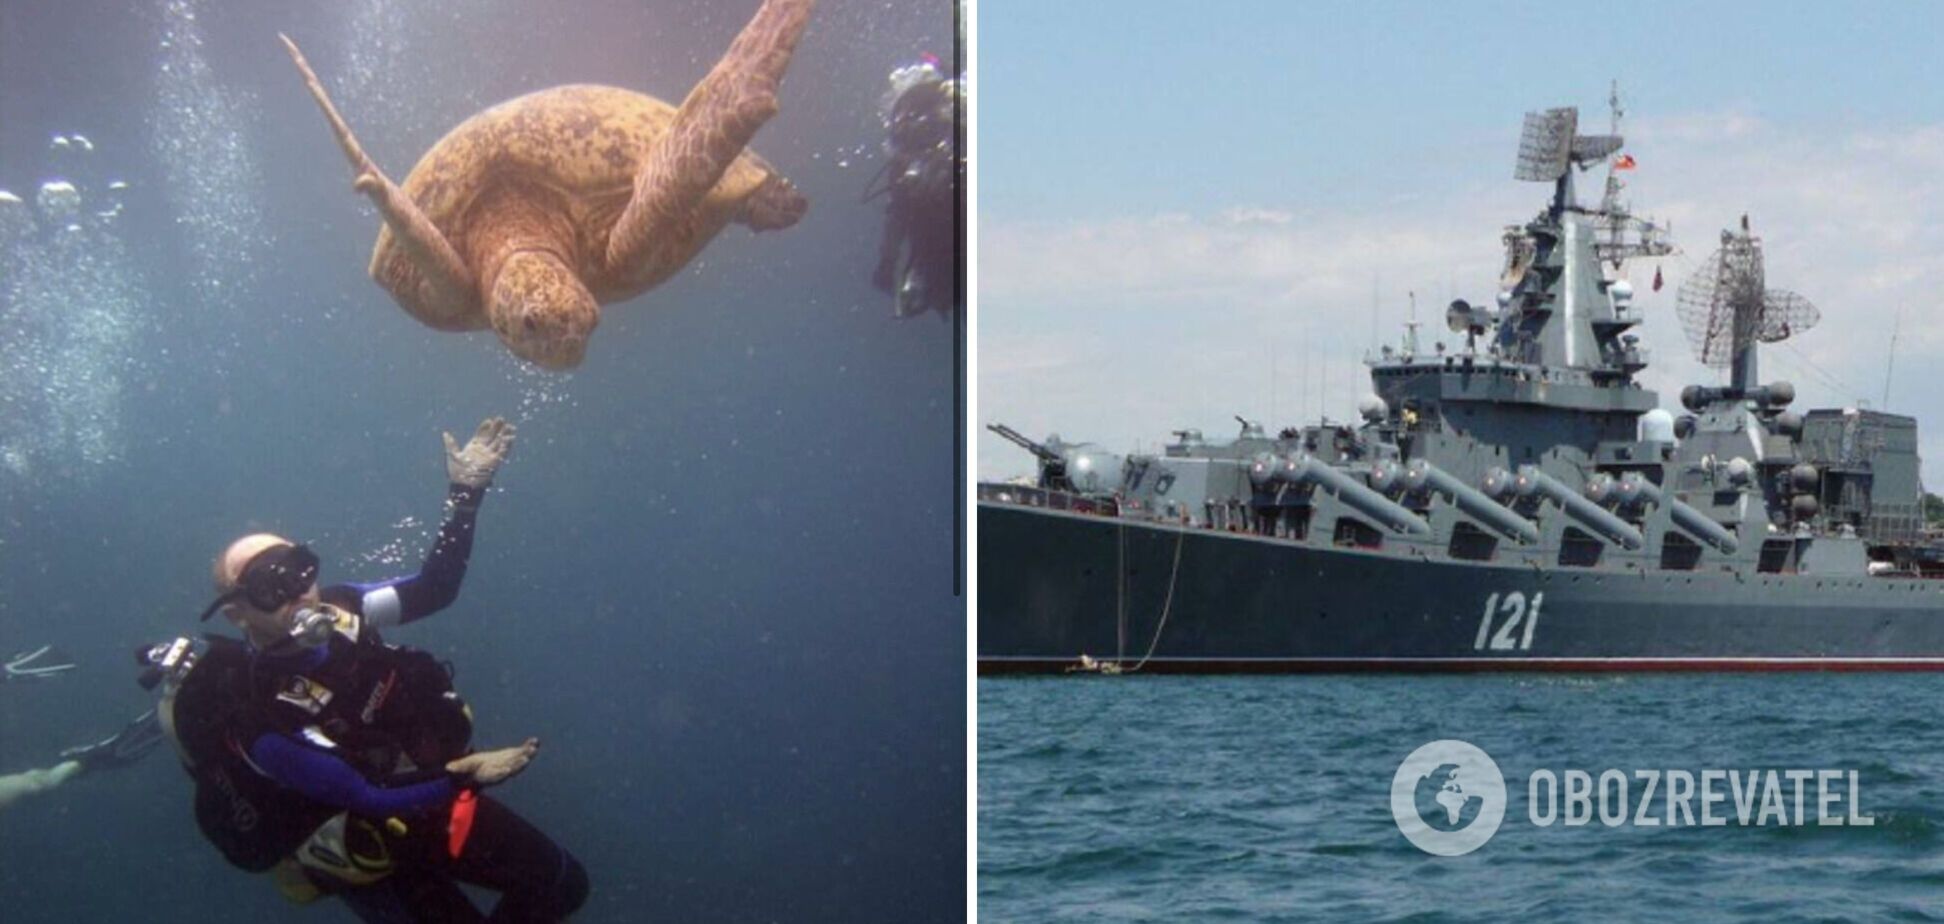 'Російський корабель тепер гідне місце для дайвінгу': Рєзніков потролив РФ після знищення крейсера 'Москва'